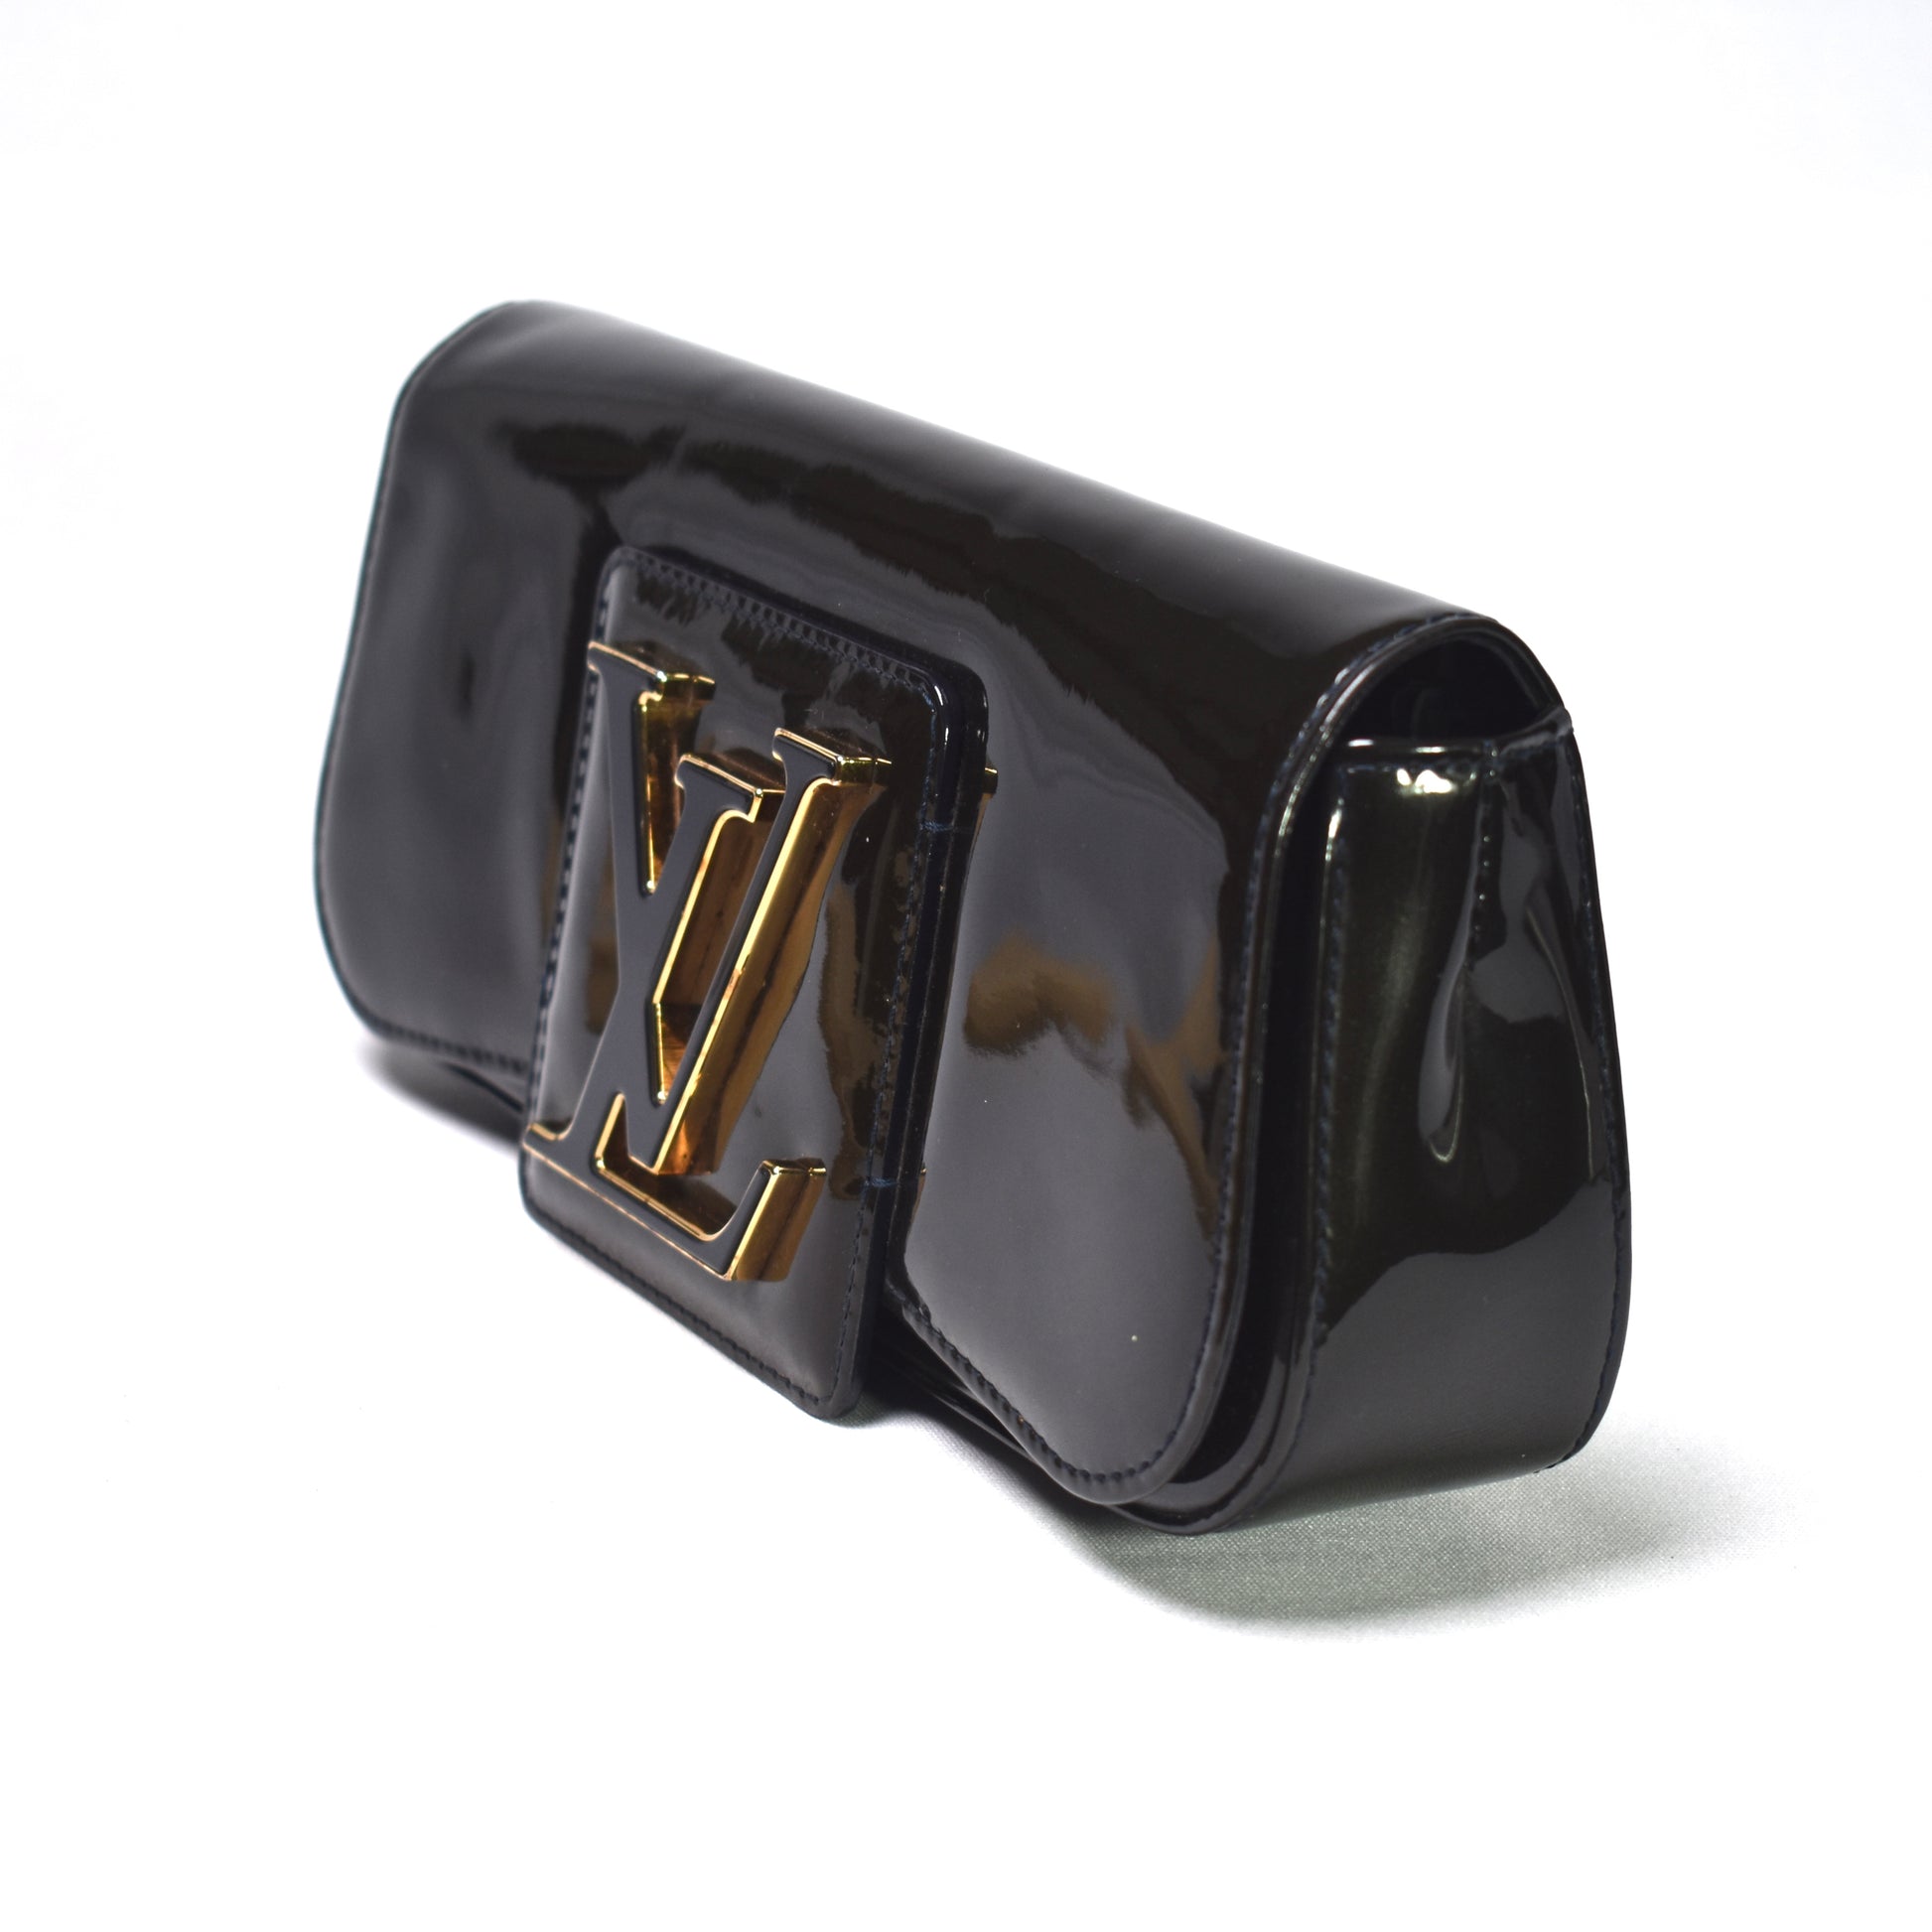 Louis Vuitton, Bags, Louis Vuitton Vintage Sobe Clutch Handbag Logo  Patent Leather Burgundy 1897